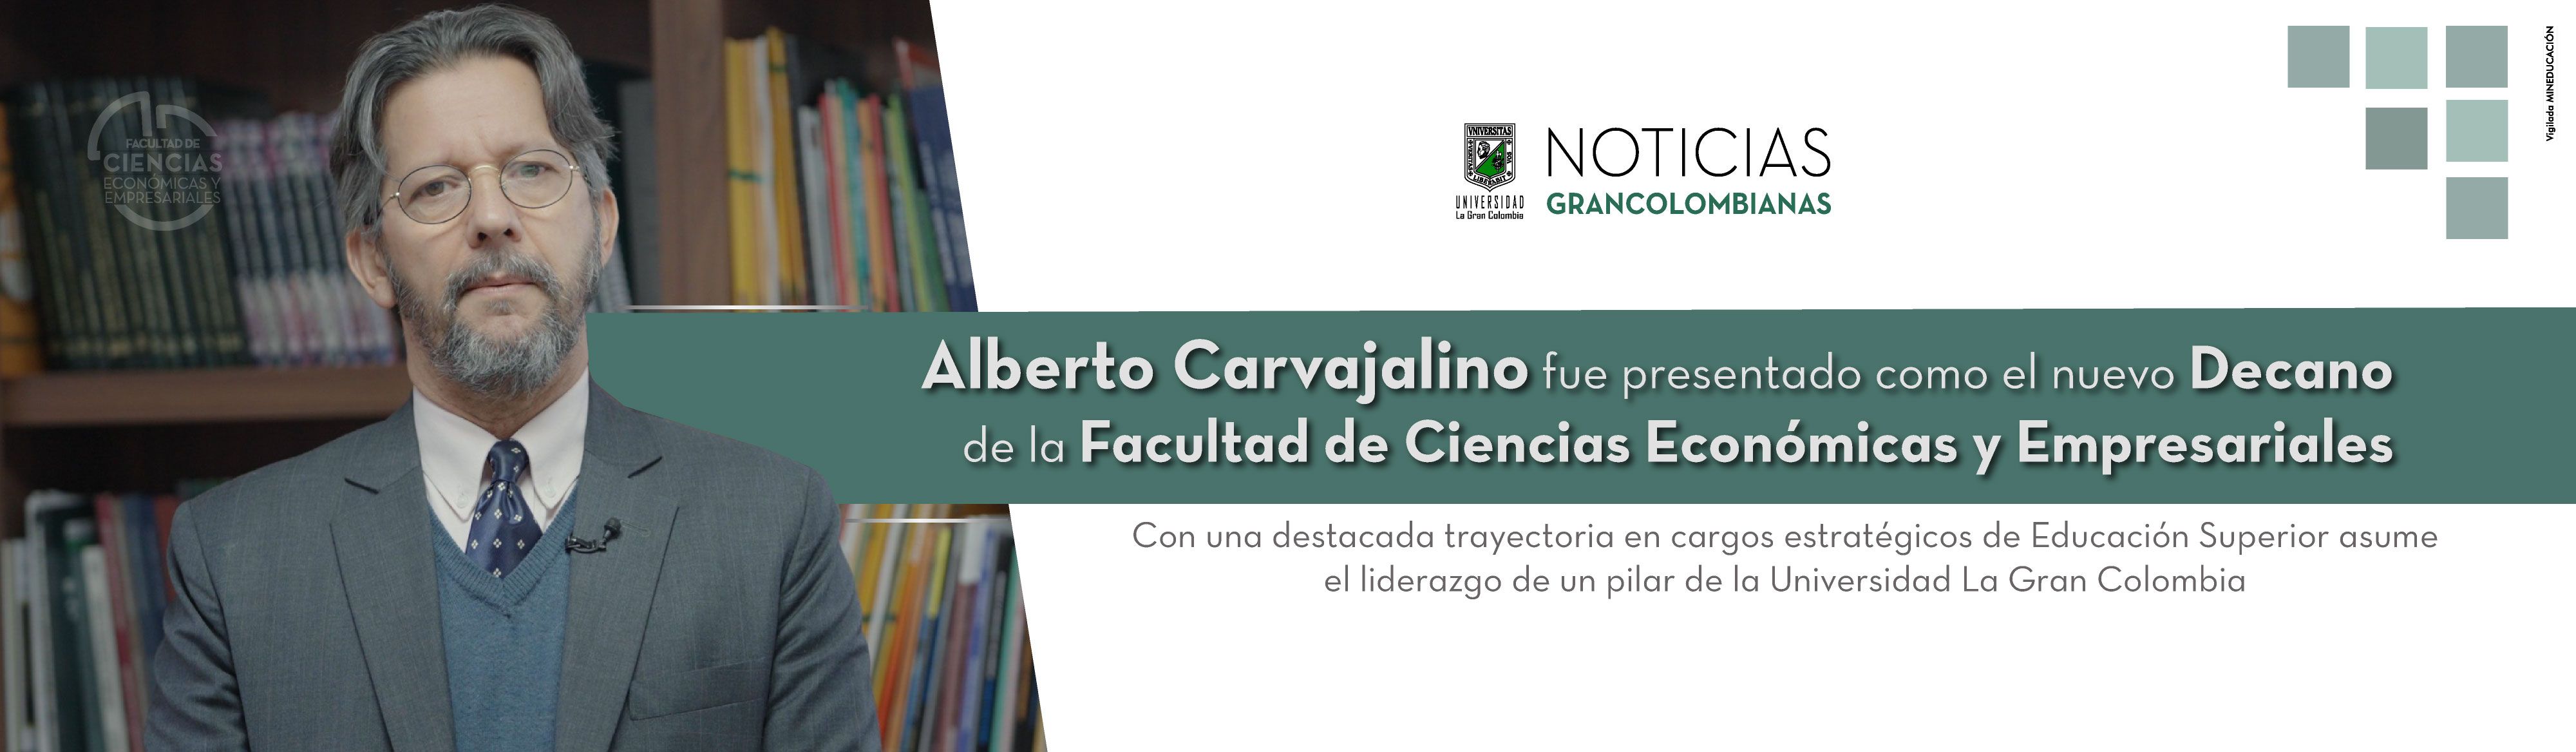 Alberto Carvajalino fue presentado como el nuevo Decano de la Facultad de Ciencias Económicas y Empresariales.